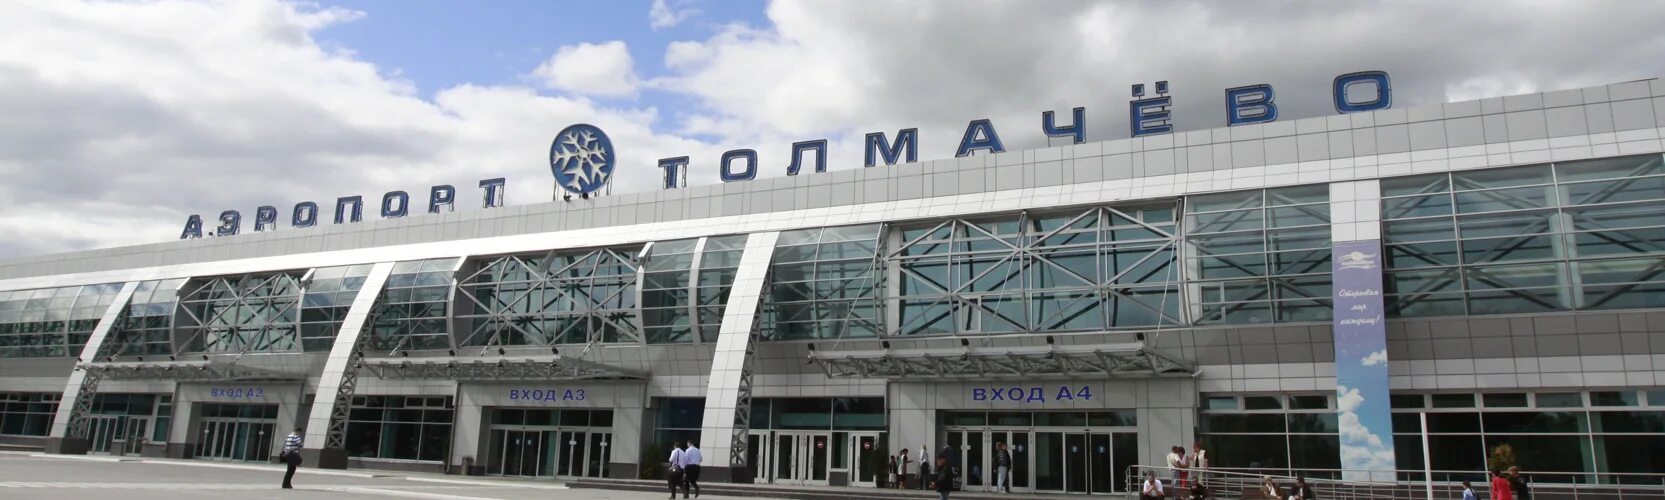 Как доехать до аэропорта толмачева новосибирск. Аэропорт Толмачево Новосибирск. Аэропорт Толмачево 2000 год. Автовокзал Толмачево Новосибирск. Толмачево ЖД вокзал Новосибирск.